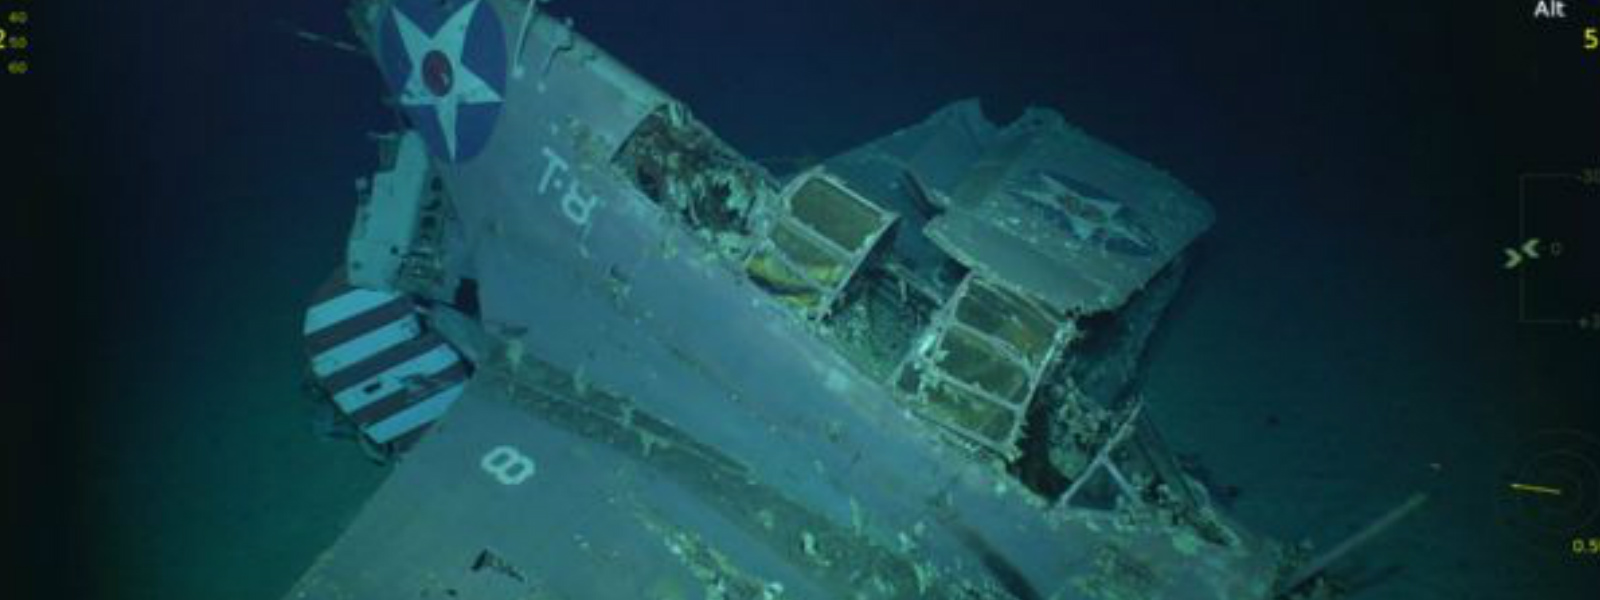 Sunken US WW2 warship found 